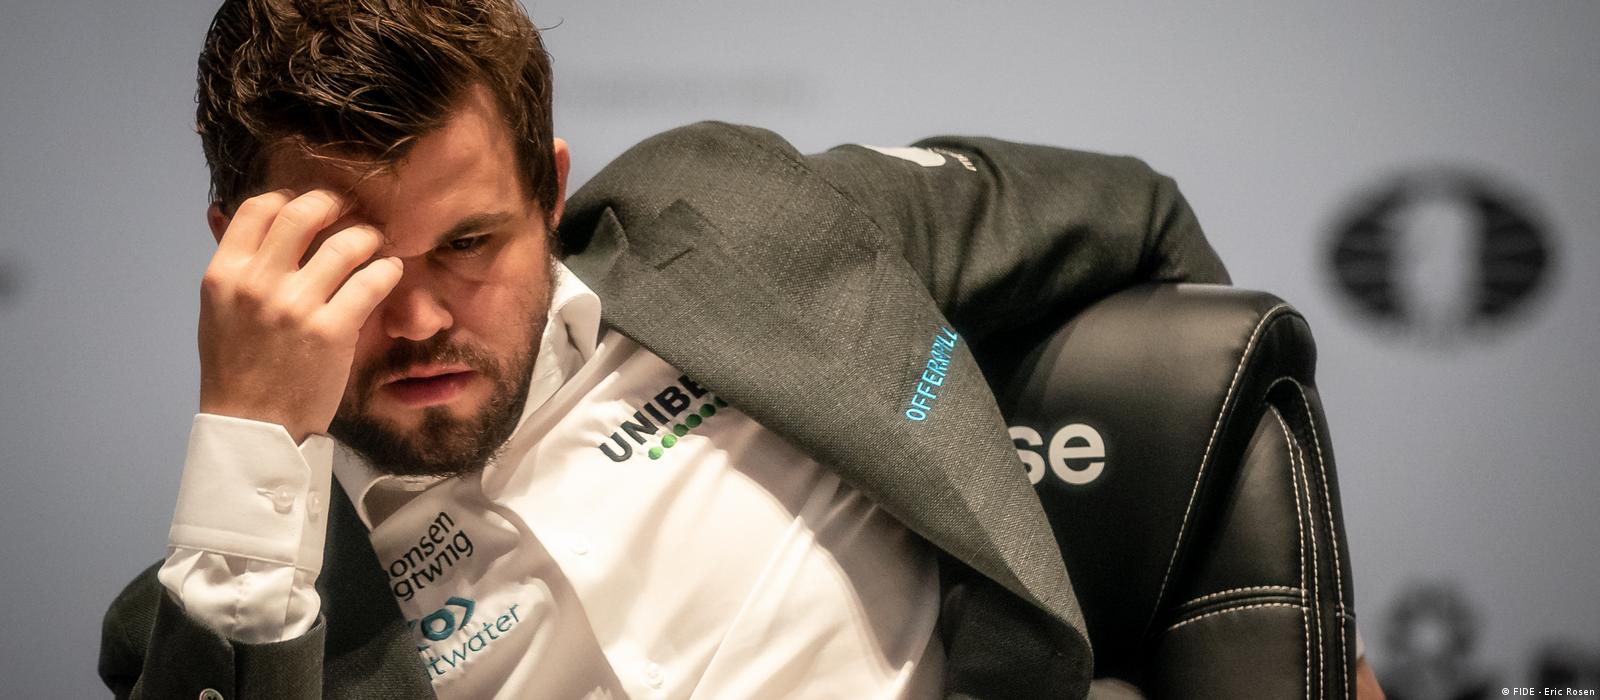 Hat sich Magnus Carlsen schachmatt gesetzt? – DW